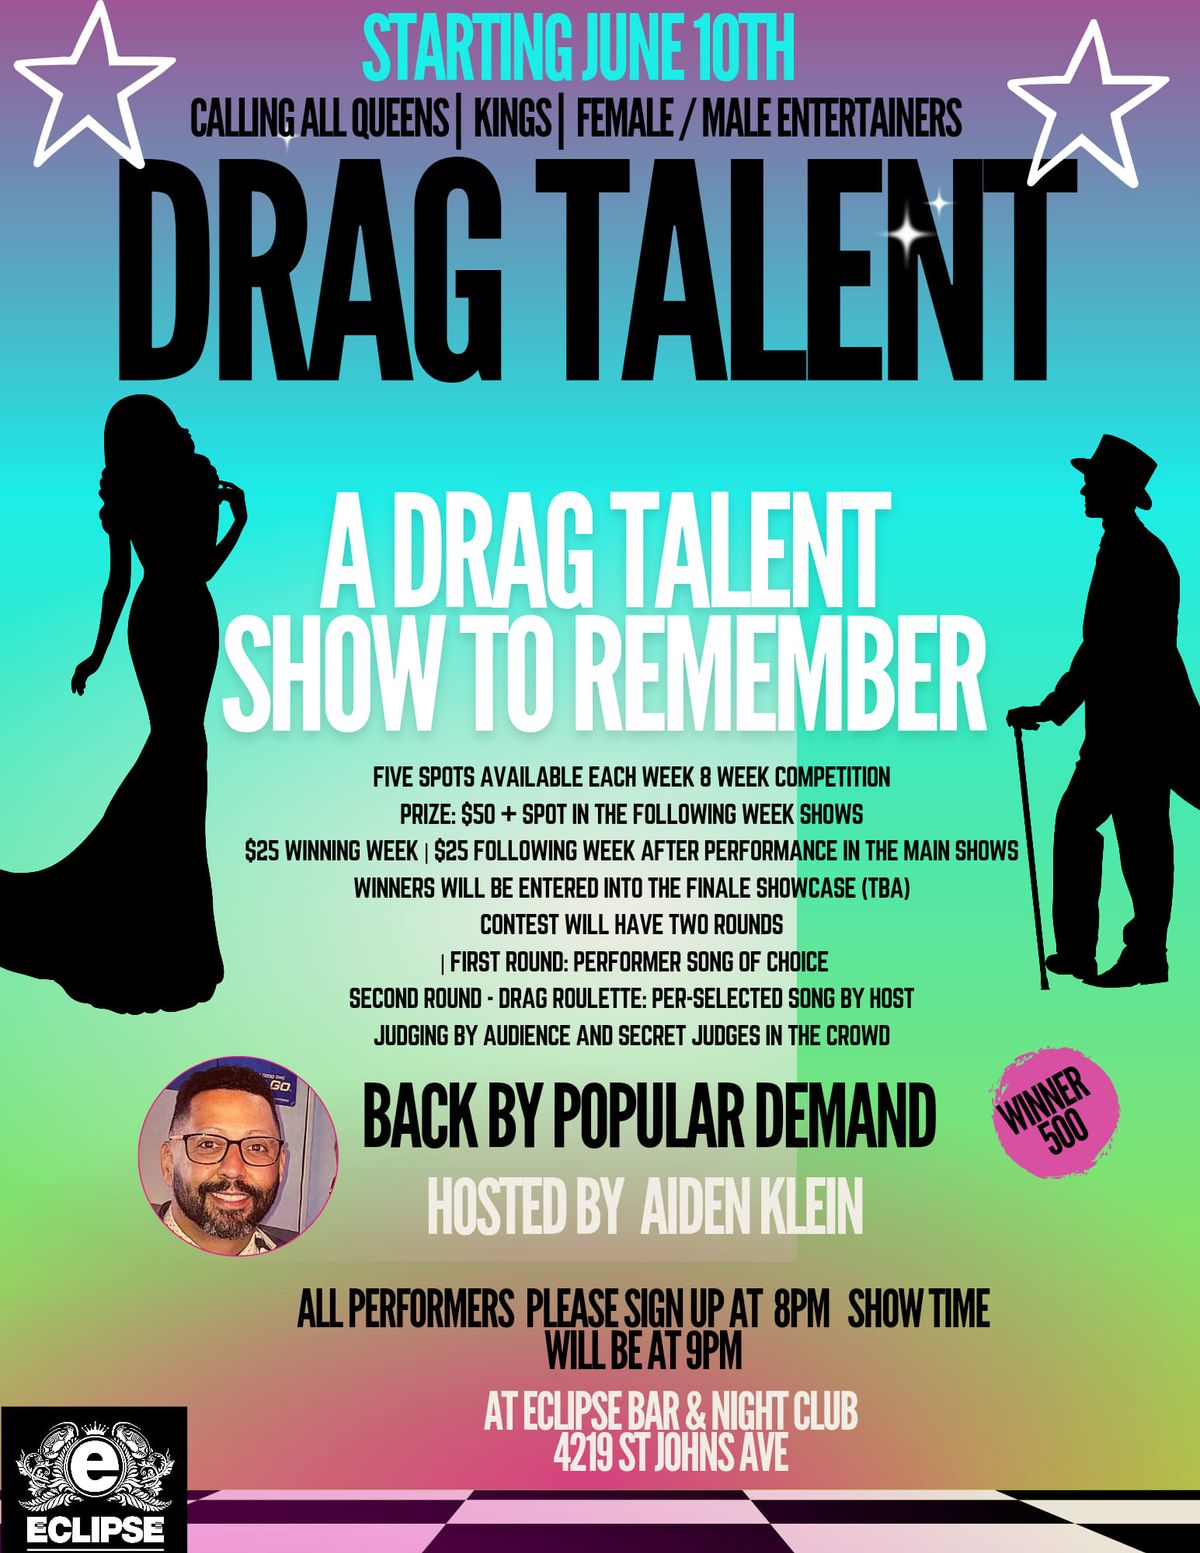 Drag talent show